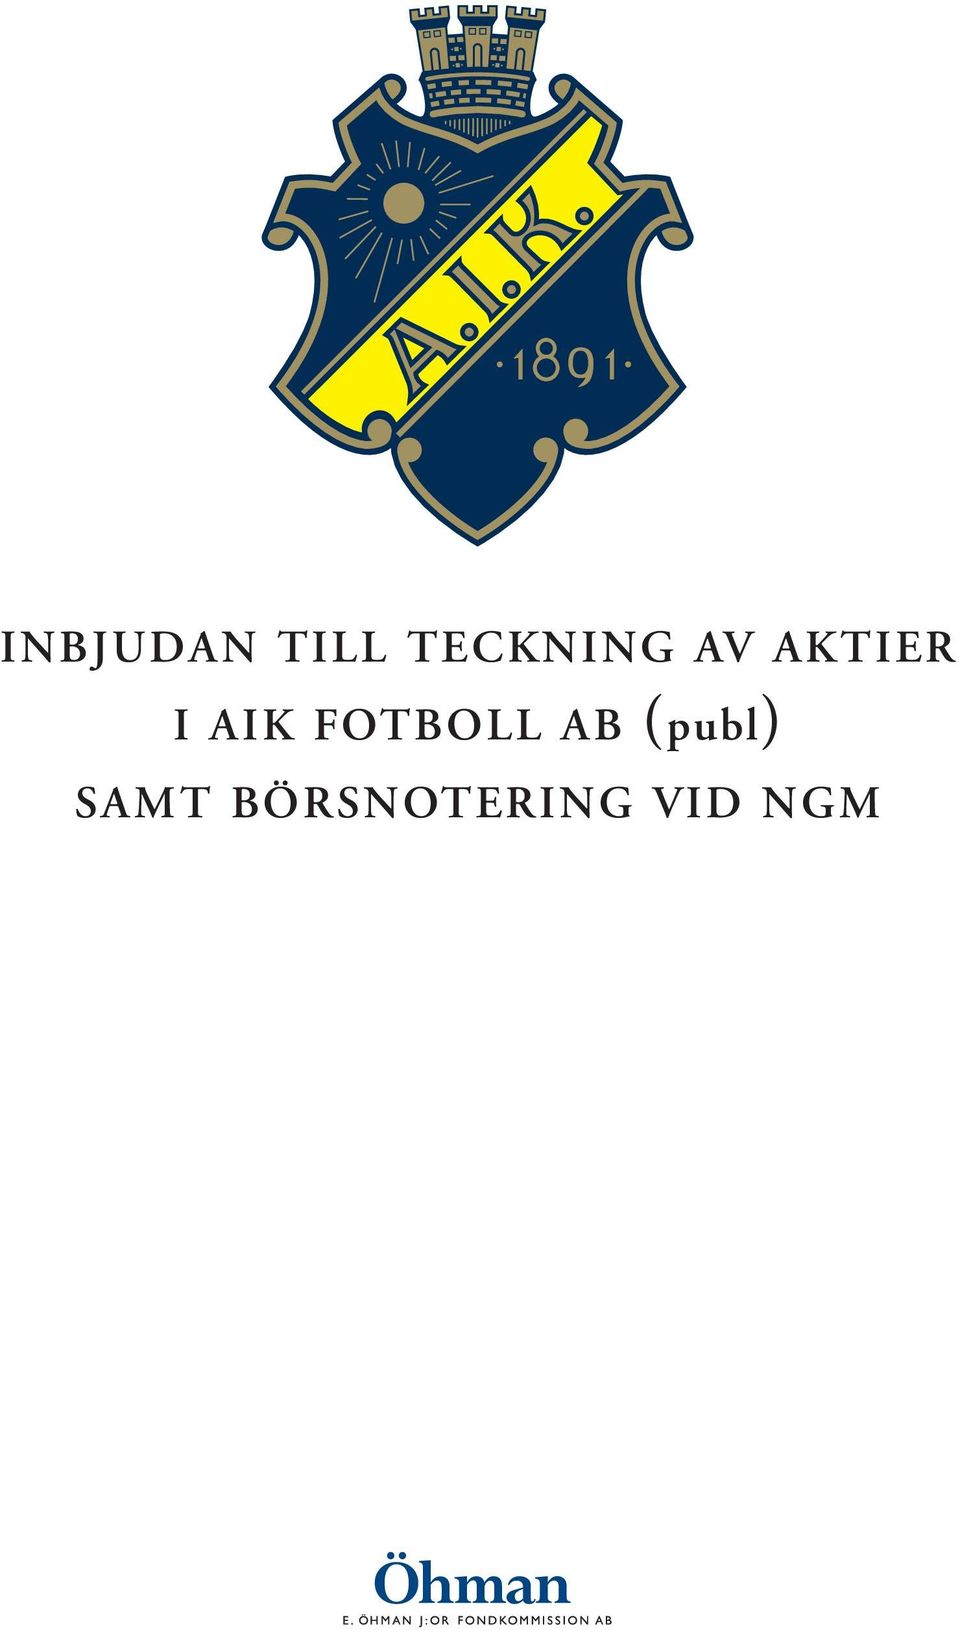 AIK FOTBOLL AB